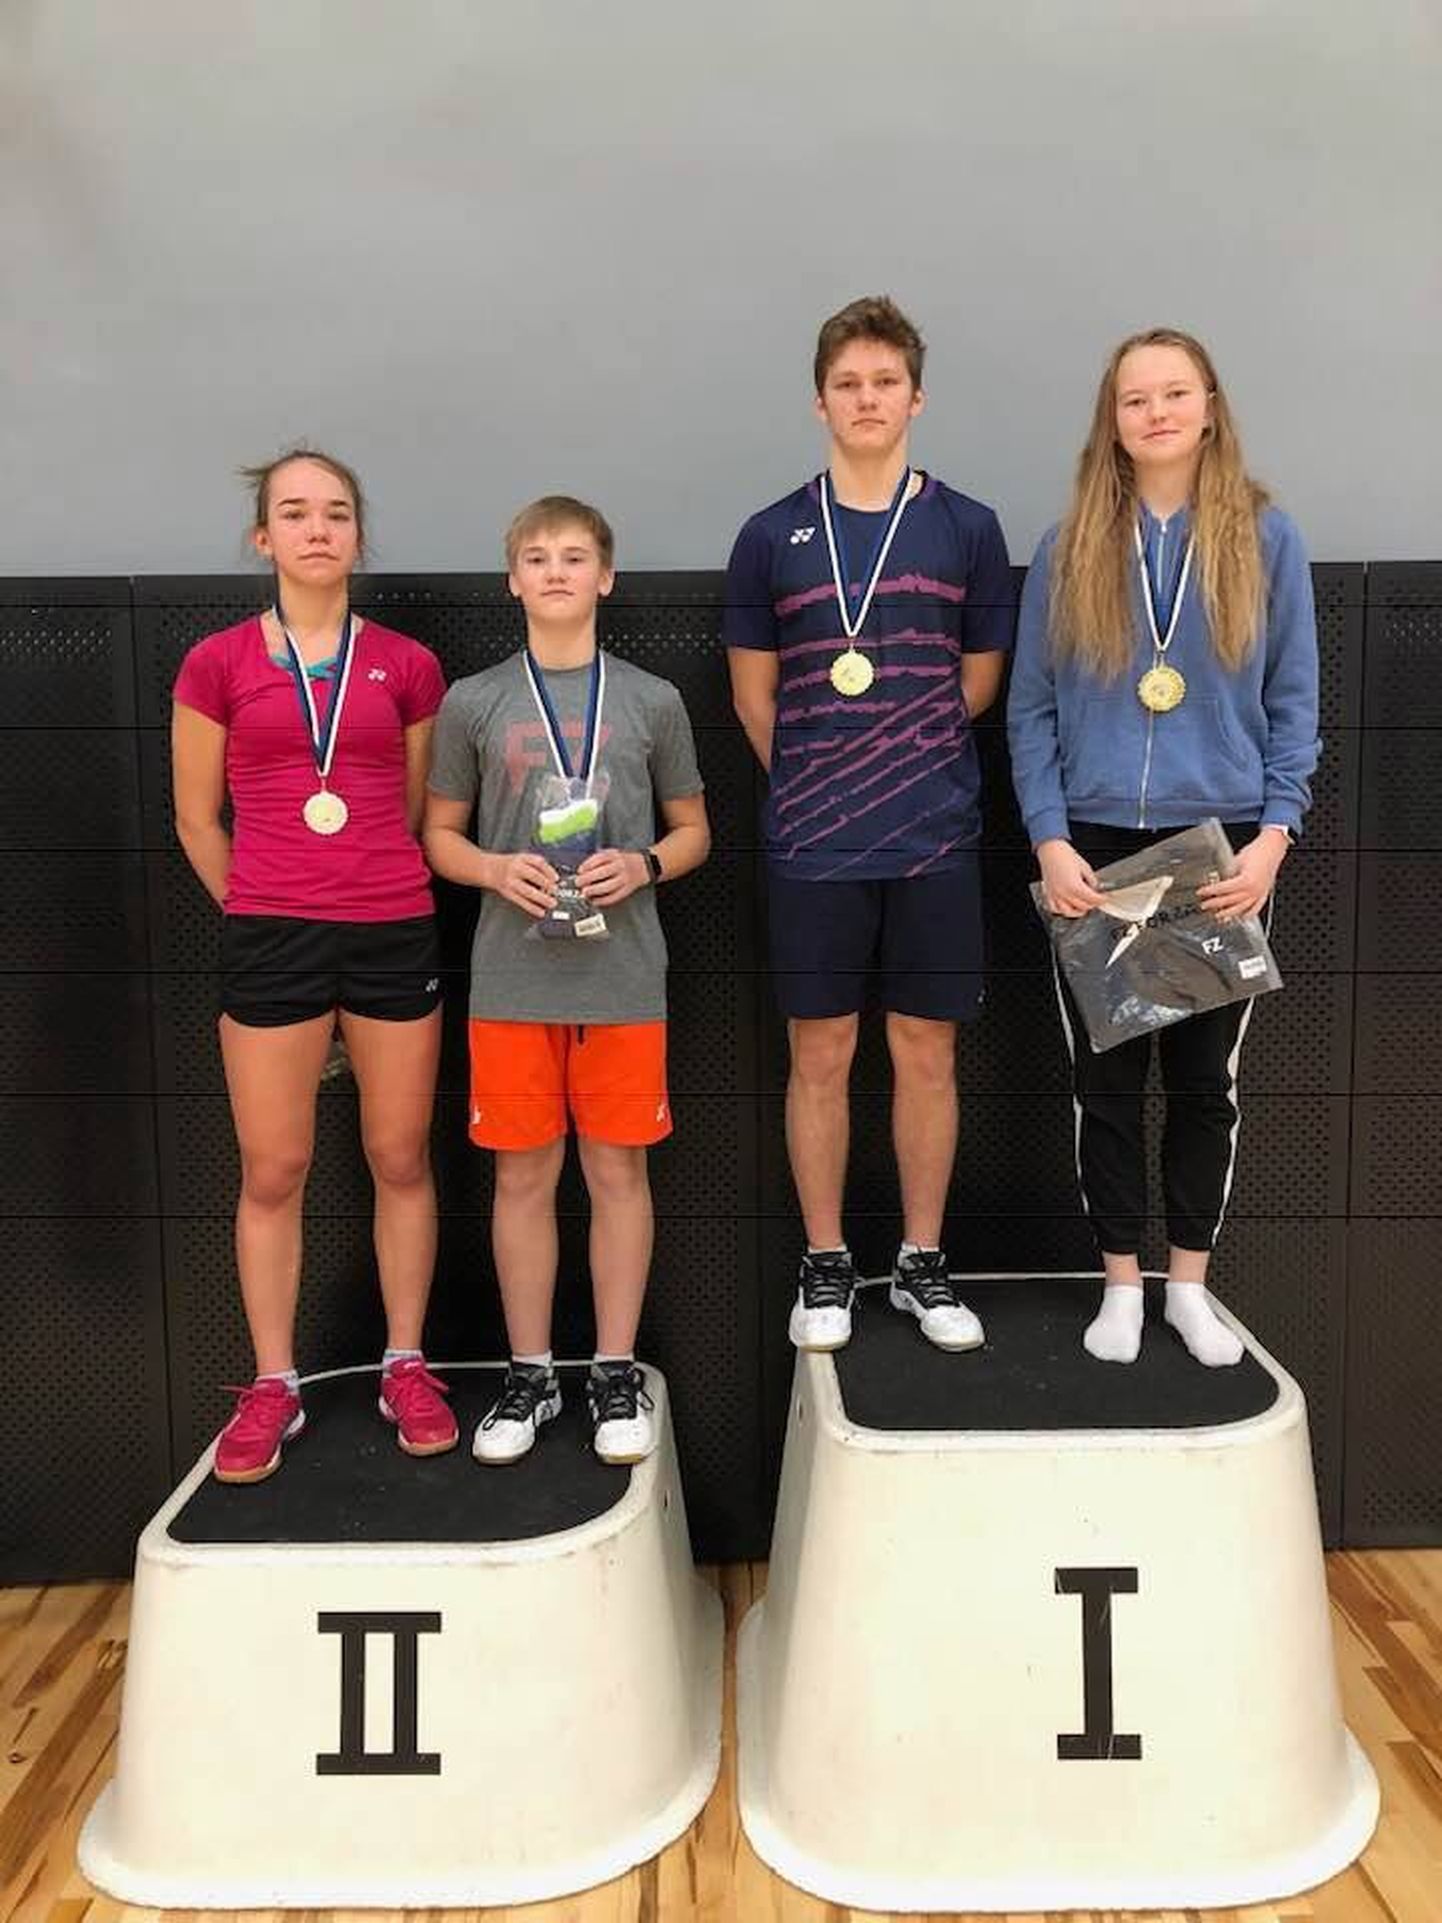 U19 vanuseklassi segapaarismängu võitsid Artur Ajupov ja Ramona Üprus (Triiton/TÜASK, paremal), kes alistasid finaalis Triitoni paari Tauri Kilk ja Catlyn Kruus.